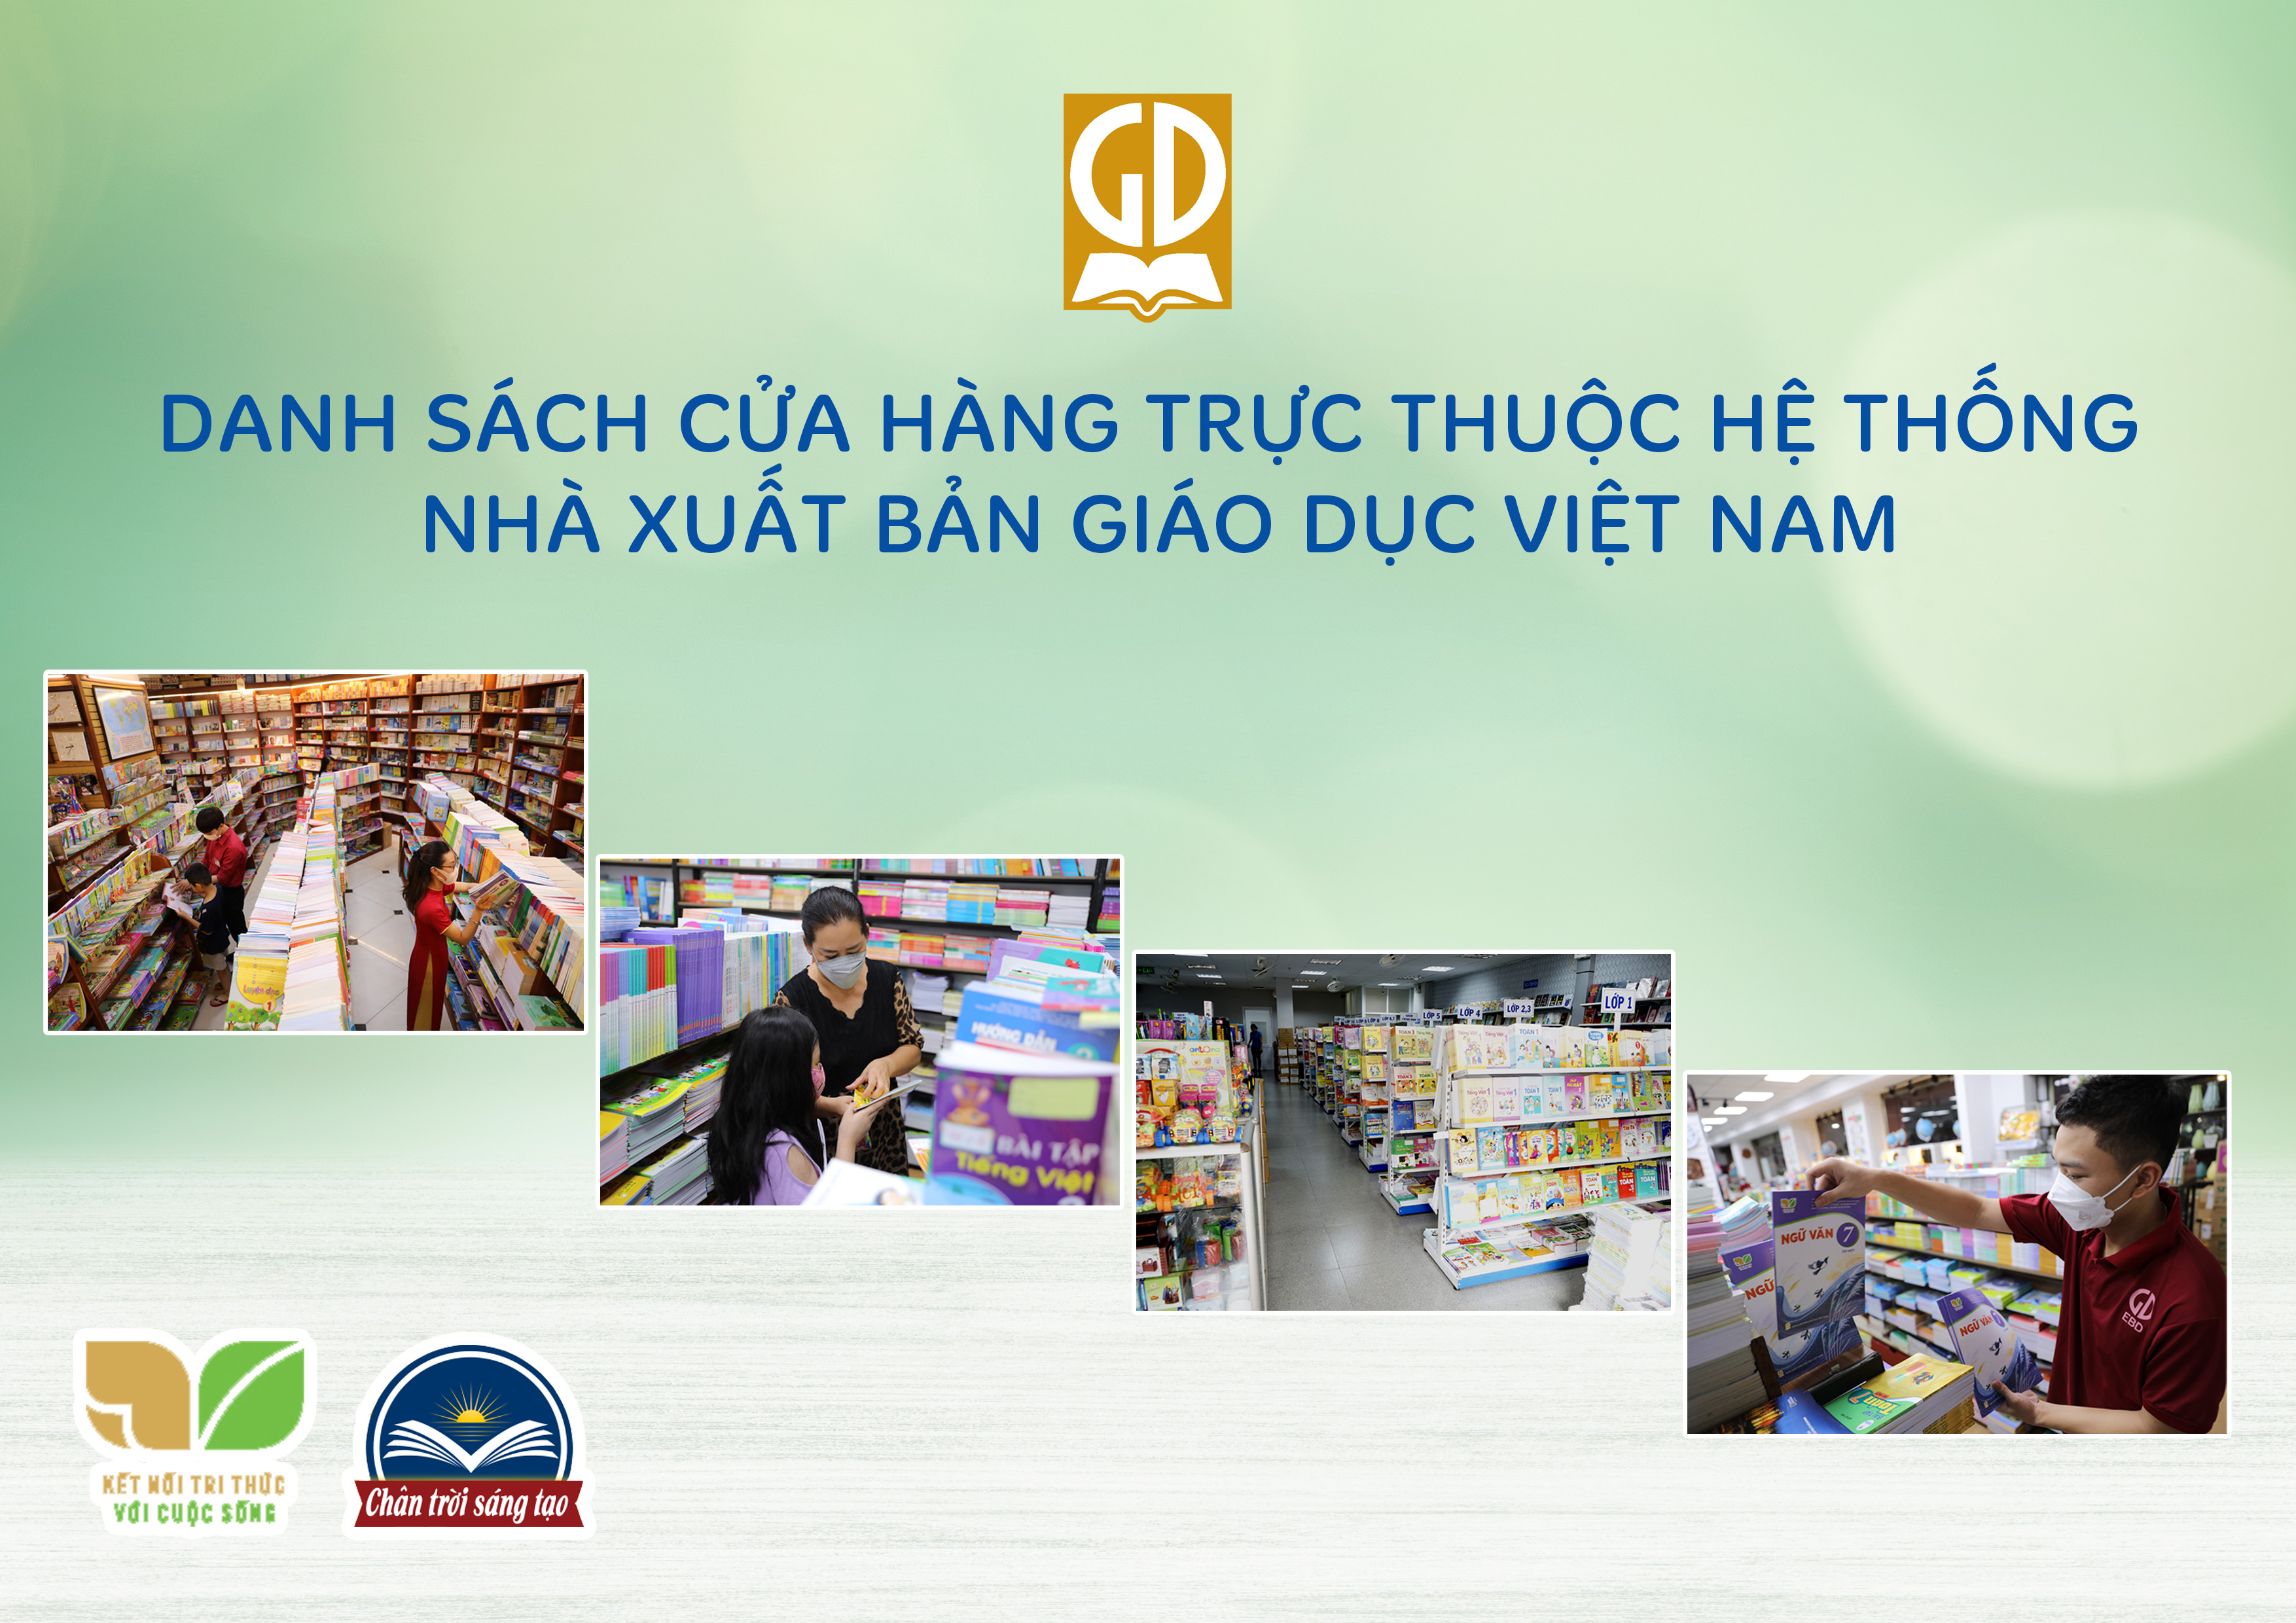 Danh sách cửa hàng trực thuộc hệ thống Nhà xuất bản Giáo dục Việt Nam